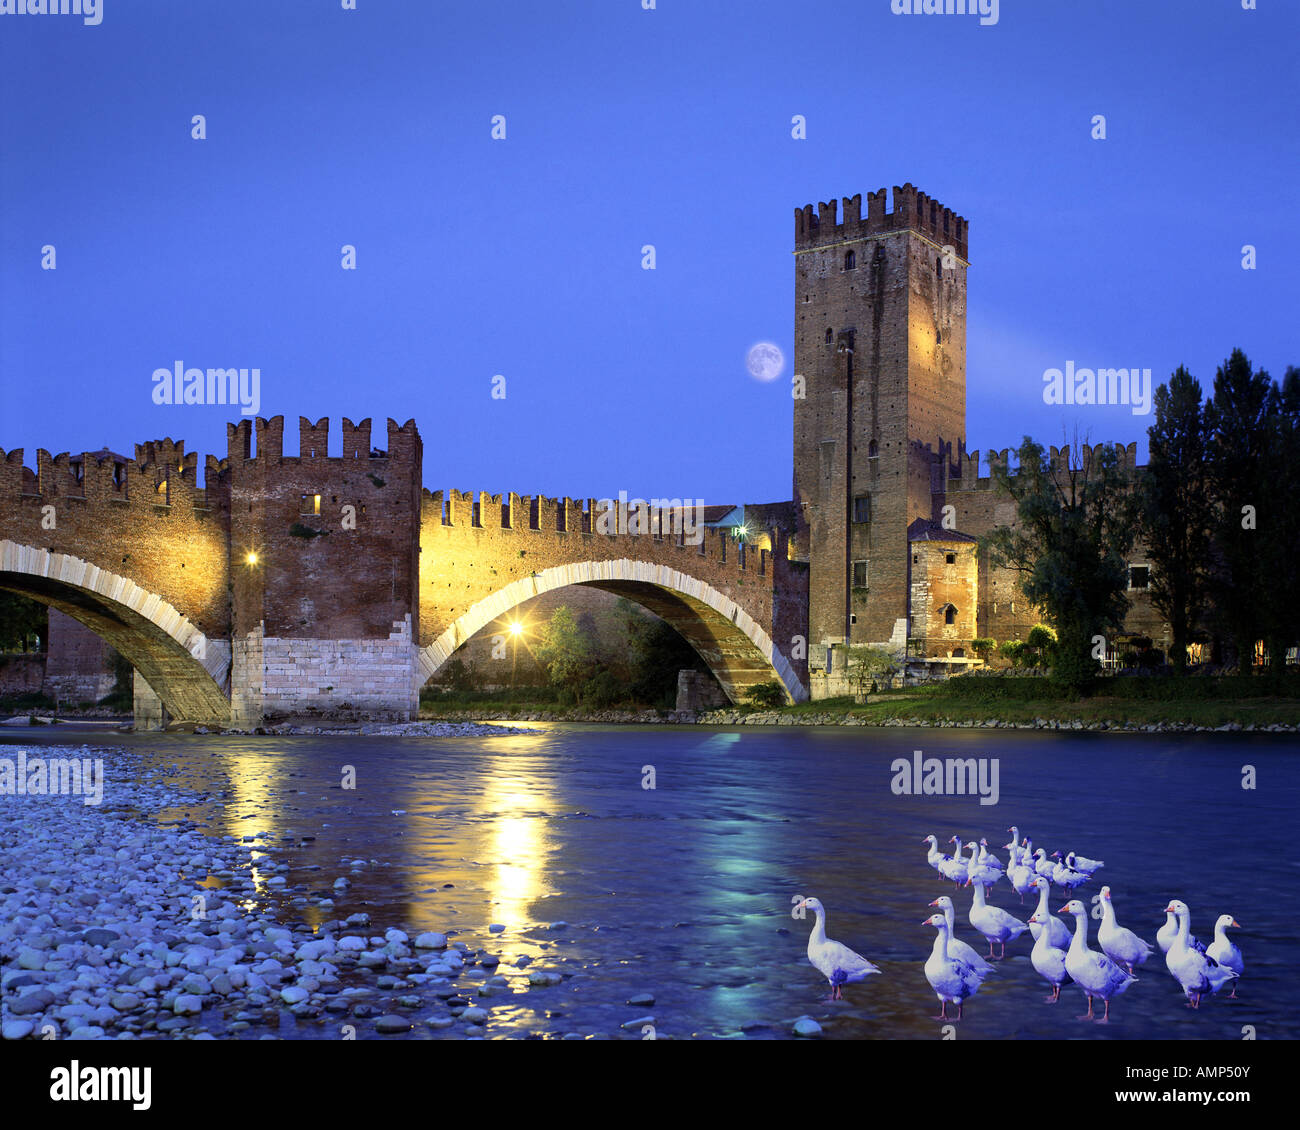 - VERONA: Ponte di Castel Vecchio Foto de stock